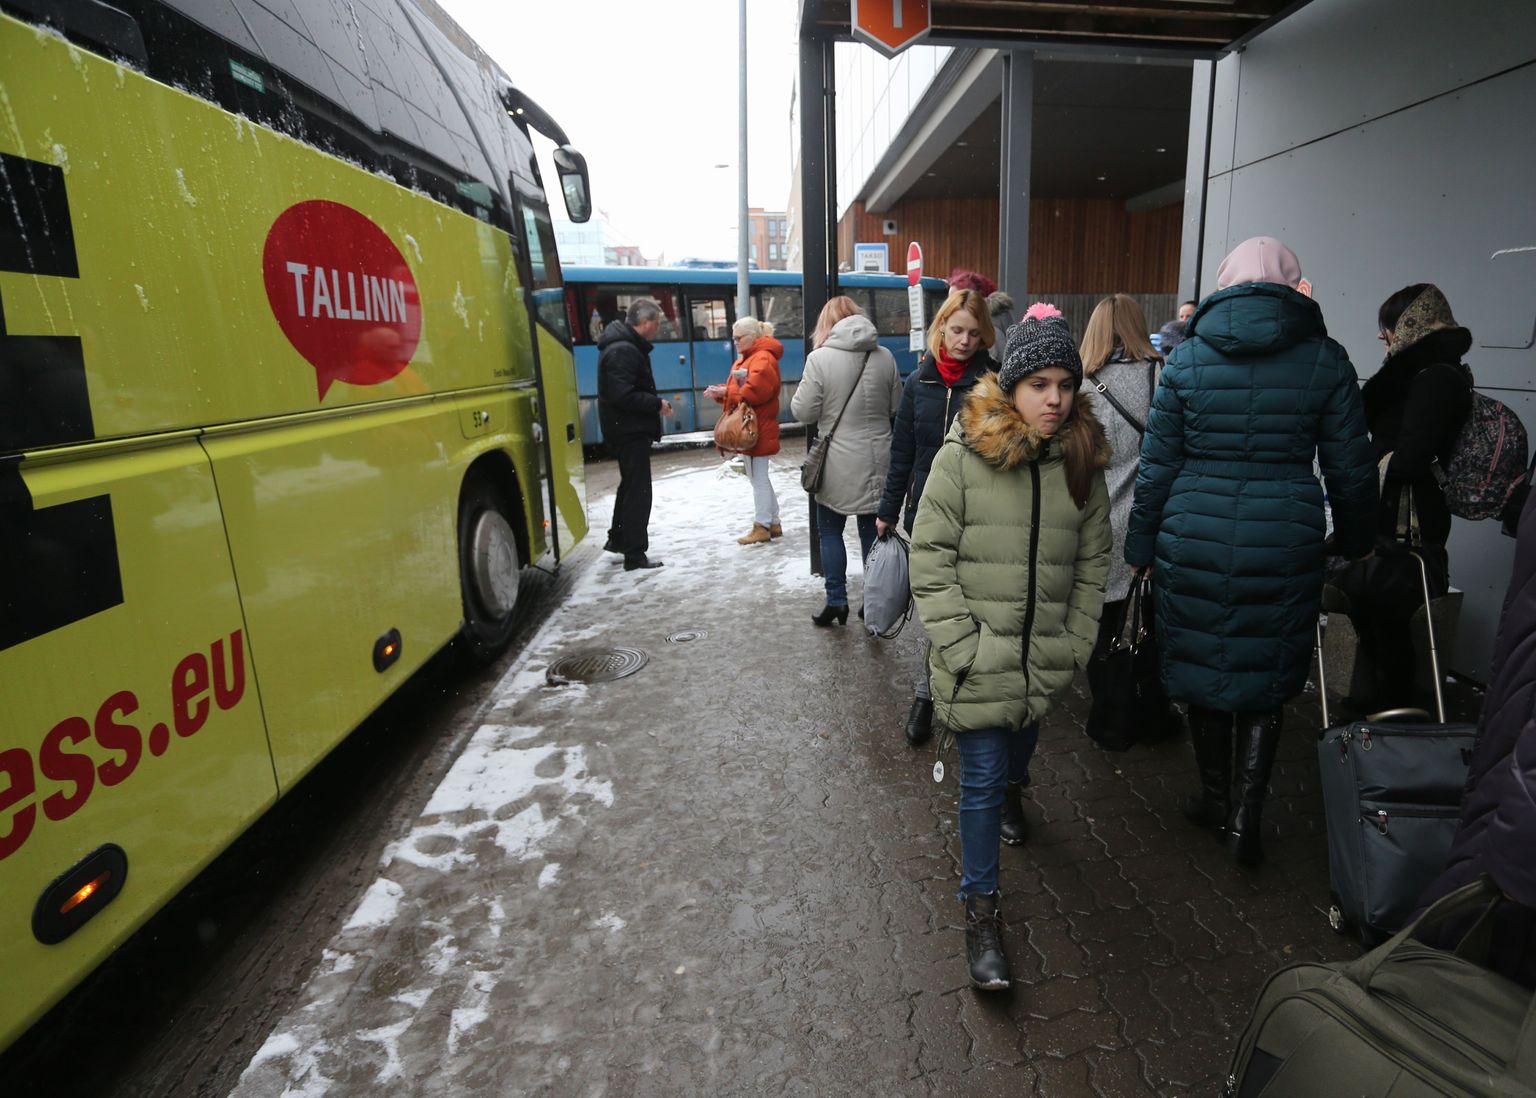 Täna veereb Tartust Tallinna ja tagasi 
sada kakskümmend bussi. Reisijaid jagub, nii et mõnel väljumisajal võib vaja minna ka lisabussi.